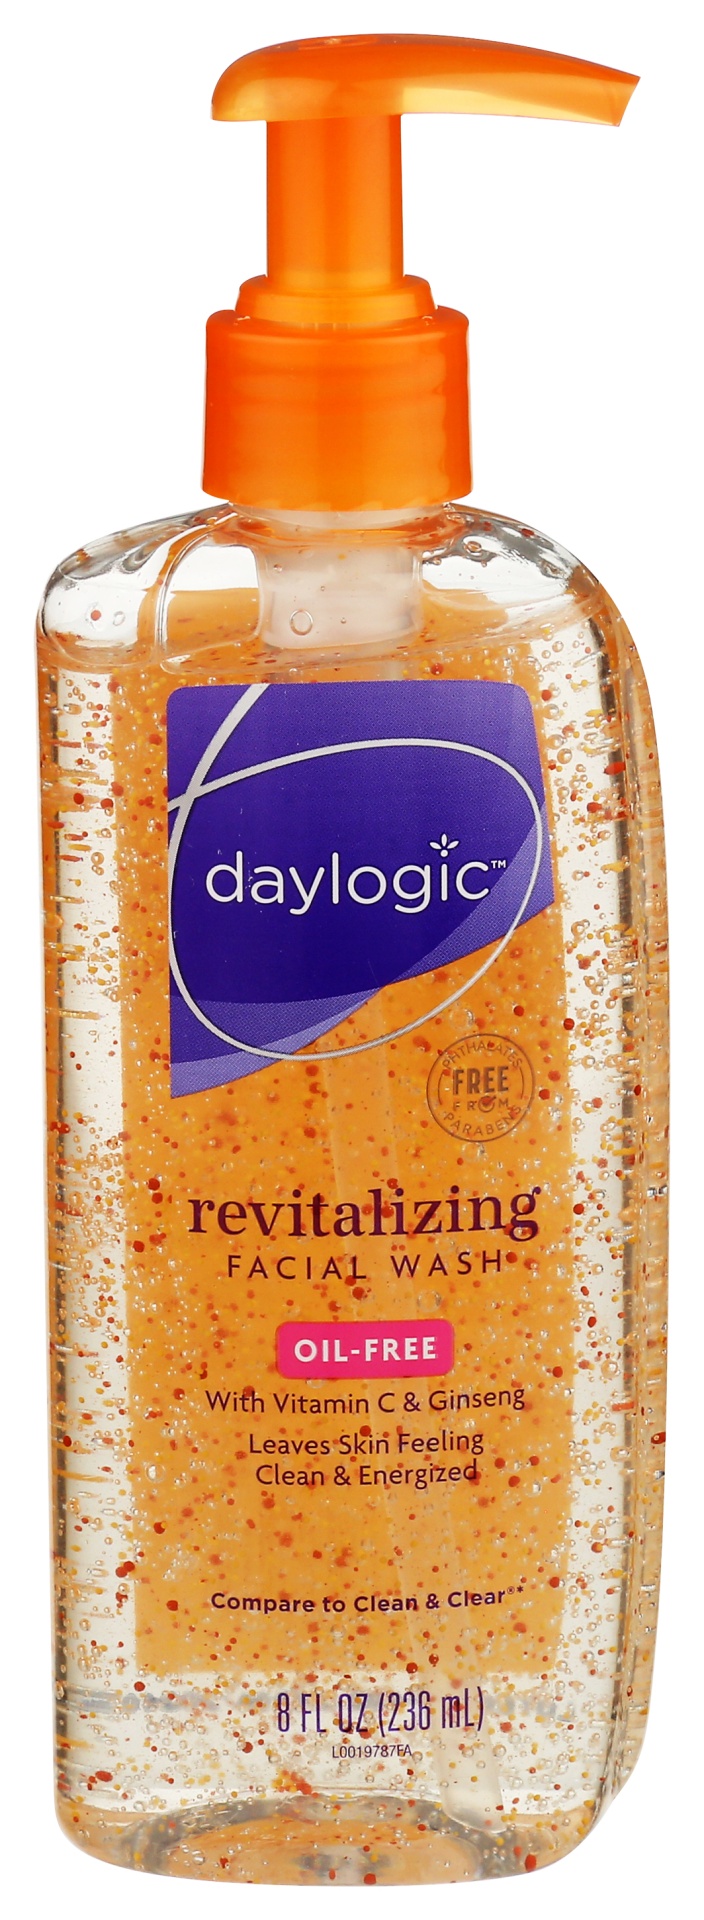 slide 1 of 1, Daylogic Revitalize Facial Wash Cleanser, 8 fl oz